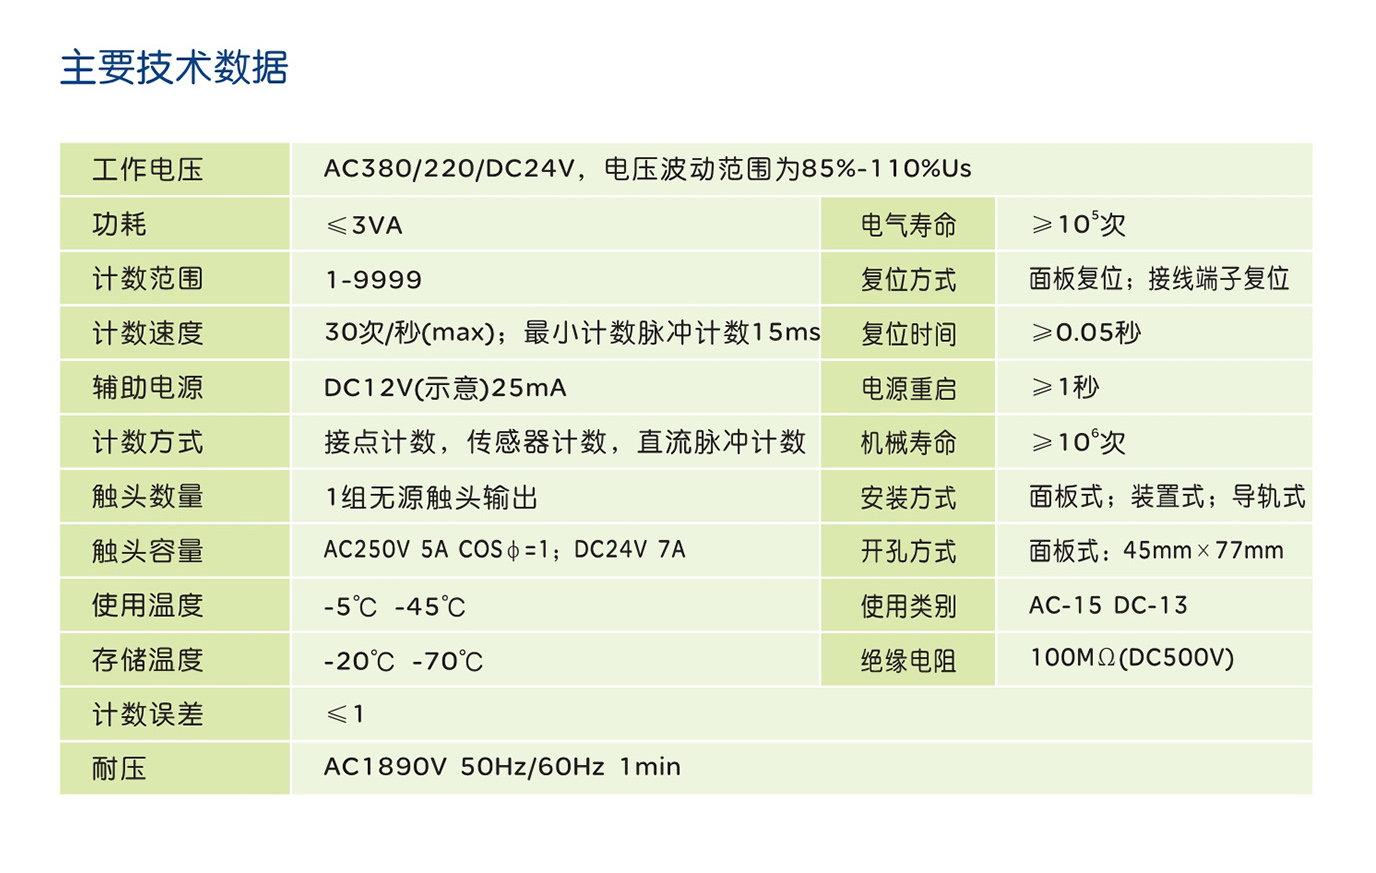 44118太阳成城集团RDJ1-9(JDM9) 系列计数器 